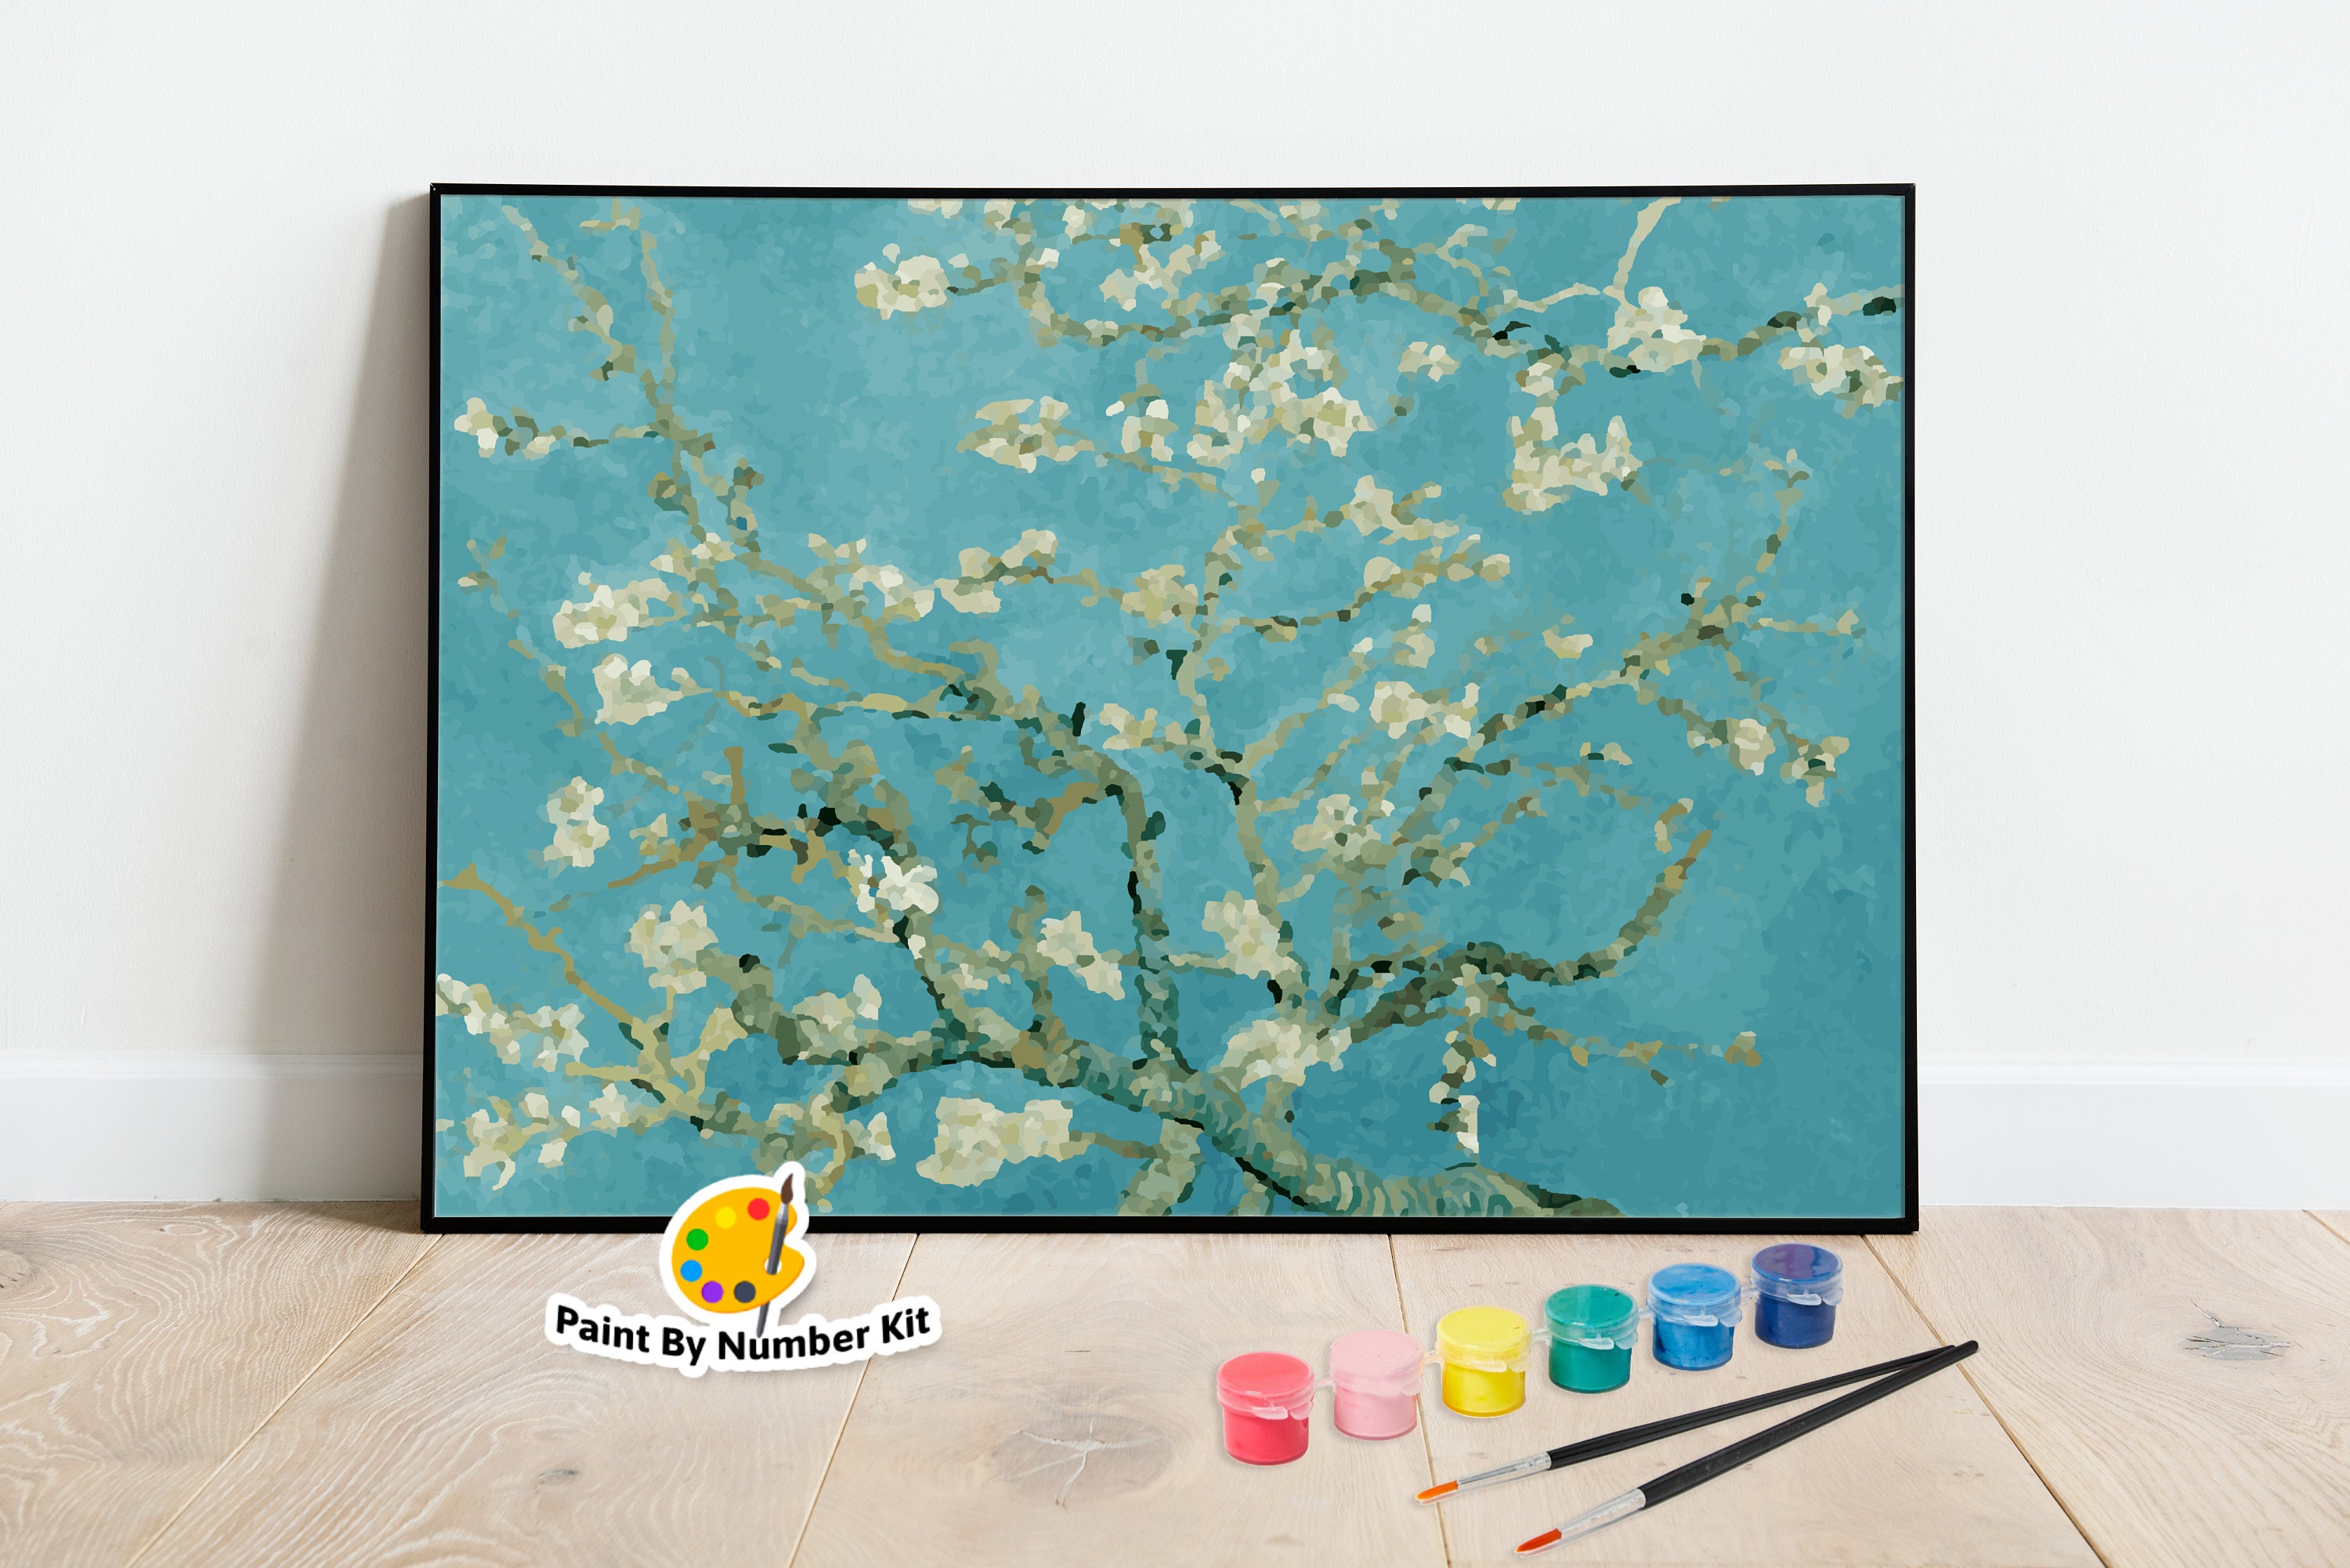 Trousse à crayons Amandier en Fleurs - Vincent Van Gogh – Galartaura